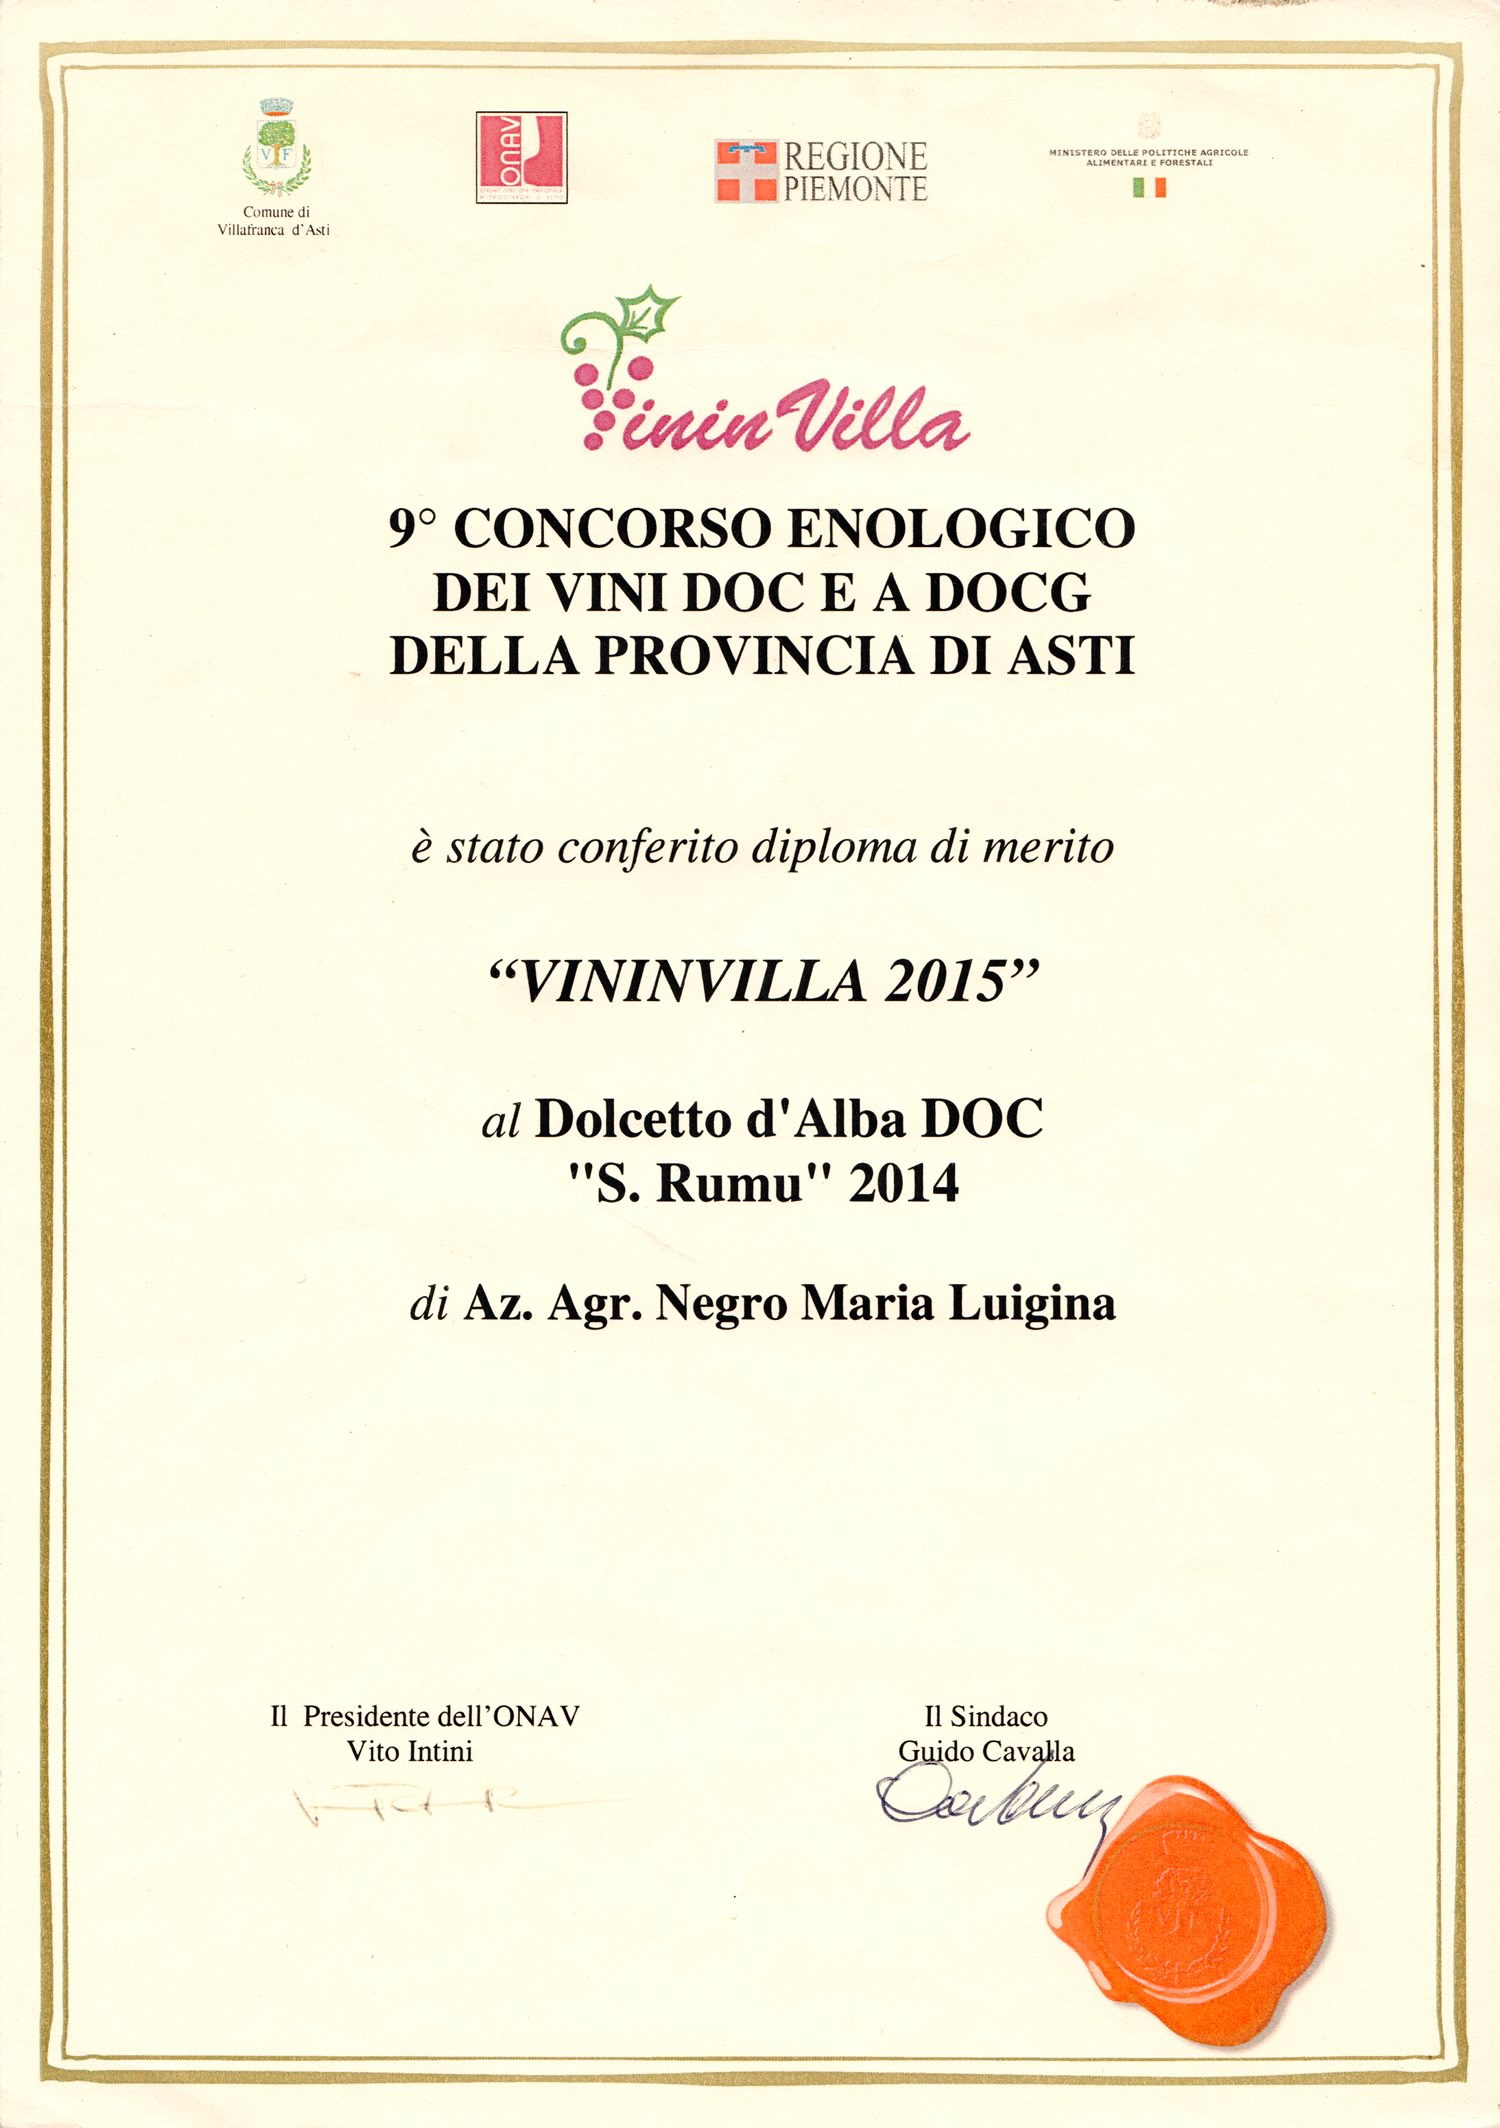 VininVilla 2015 - Dolcetto d'Alba D.O.C. "S. Rumu" 2014.